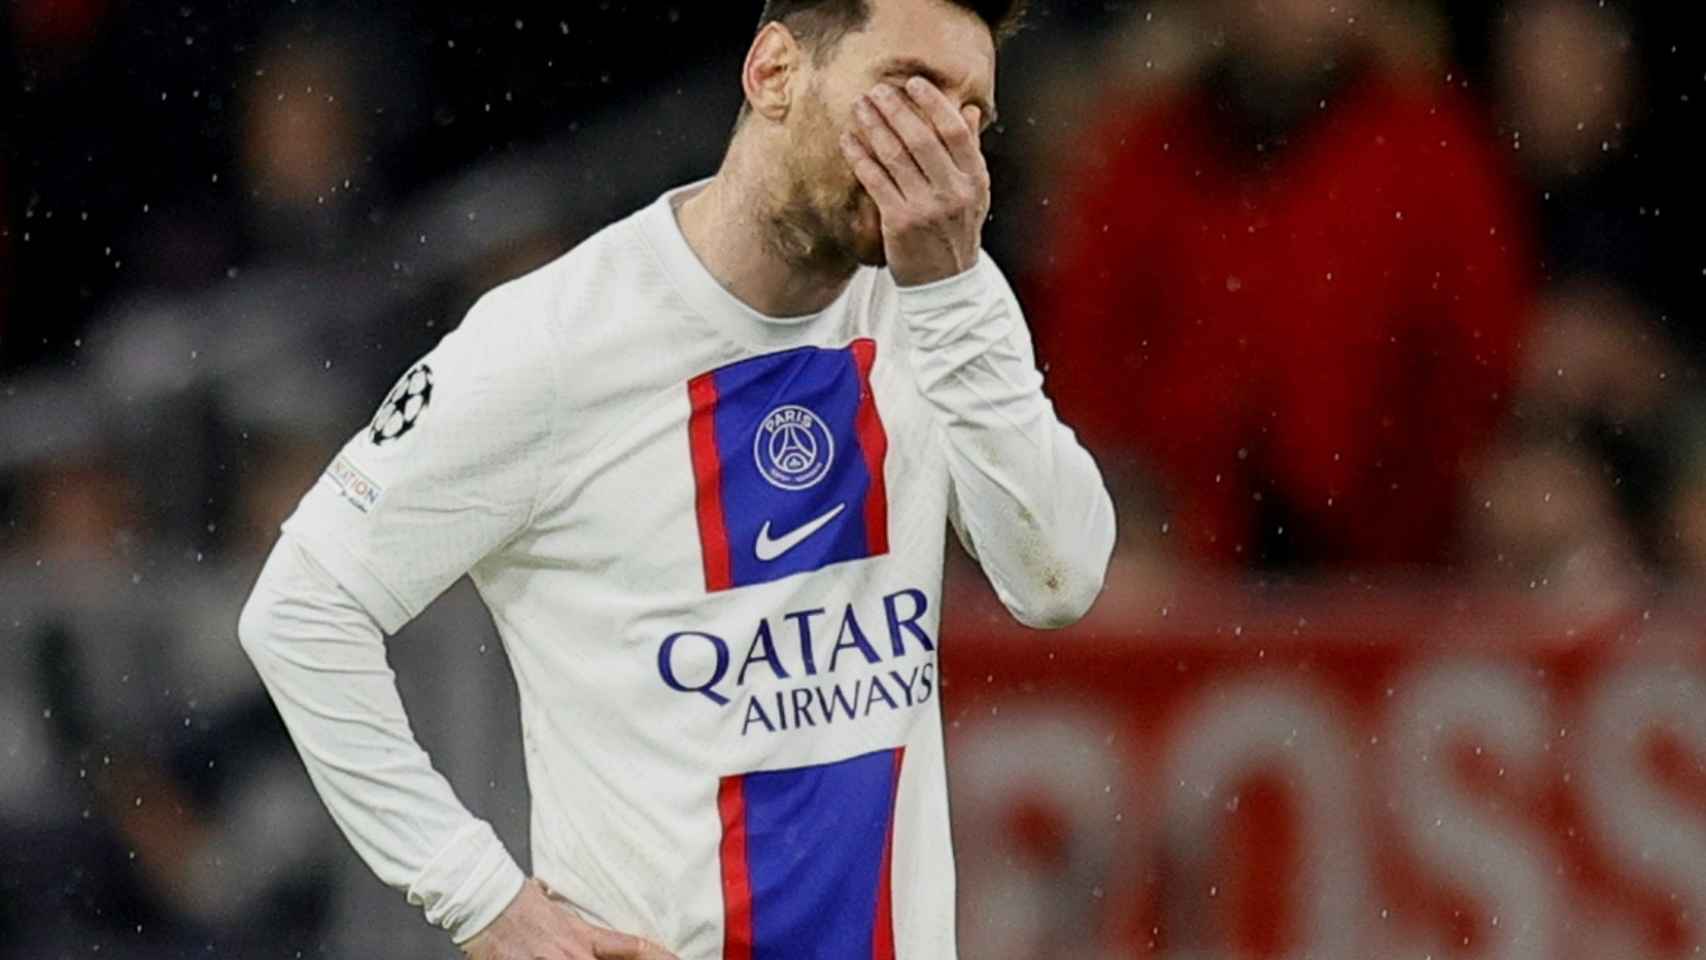 Messi, con la cara tapada por su eliminación en los octavos de final de Champions League.